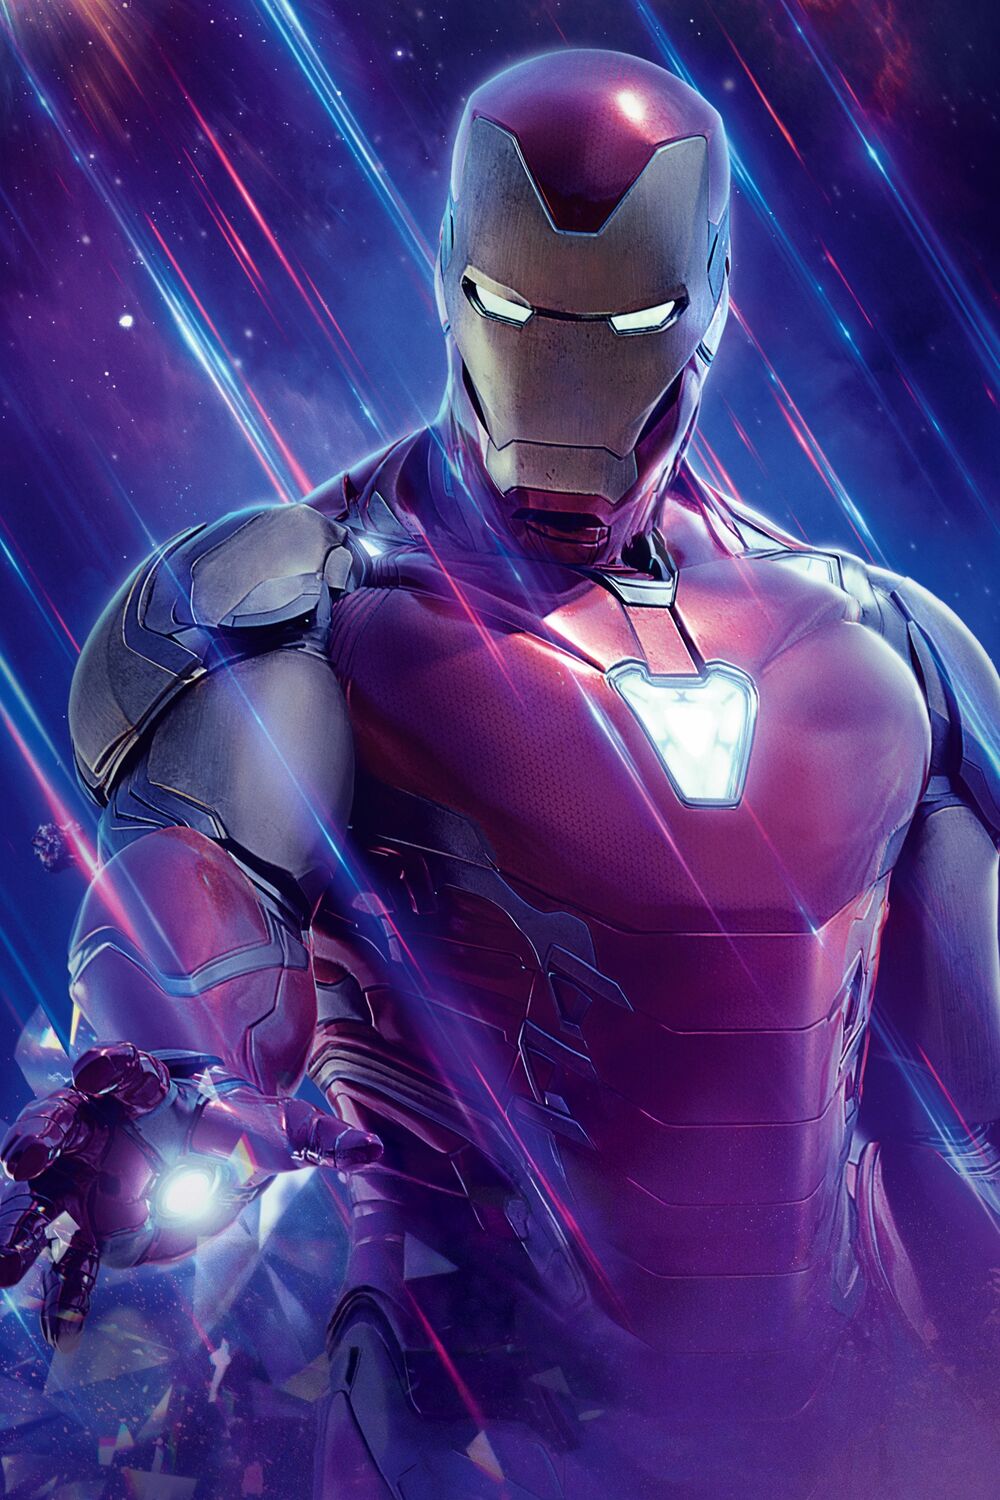 Tony Stark . Iron-Man . E.D.I.T.H. Glasses by 9aFilms on DeviantArt